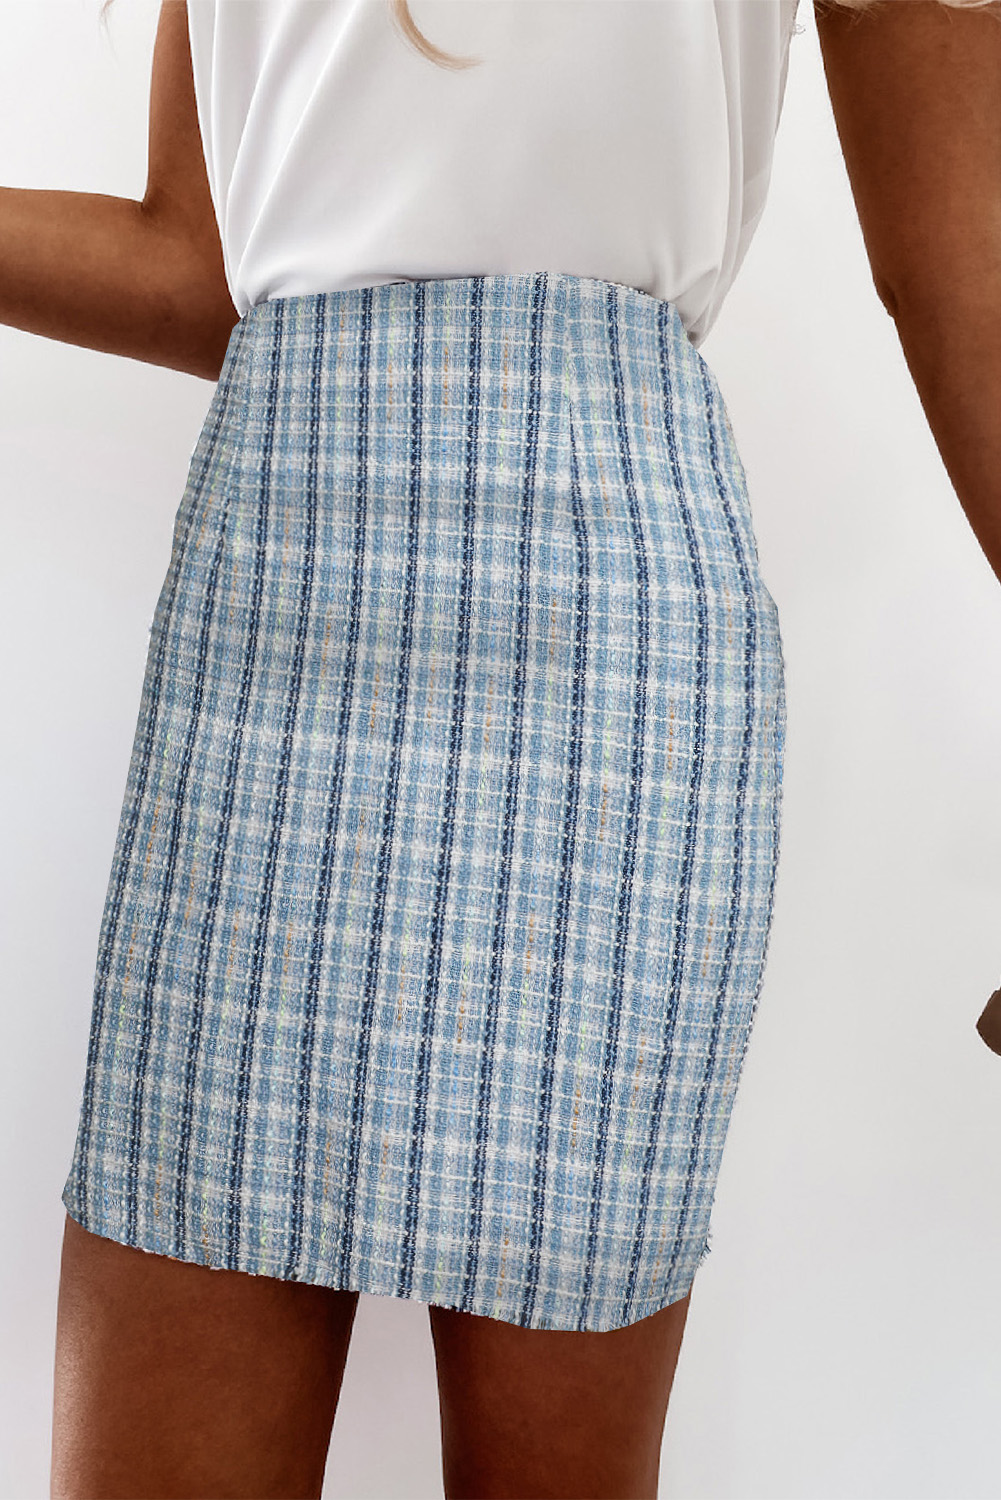 Sky Blue High Waist Tweed Plaid Mini Skirt - (US 4-6)S